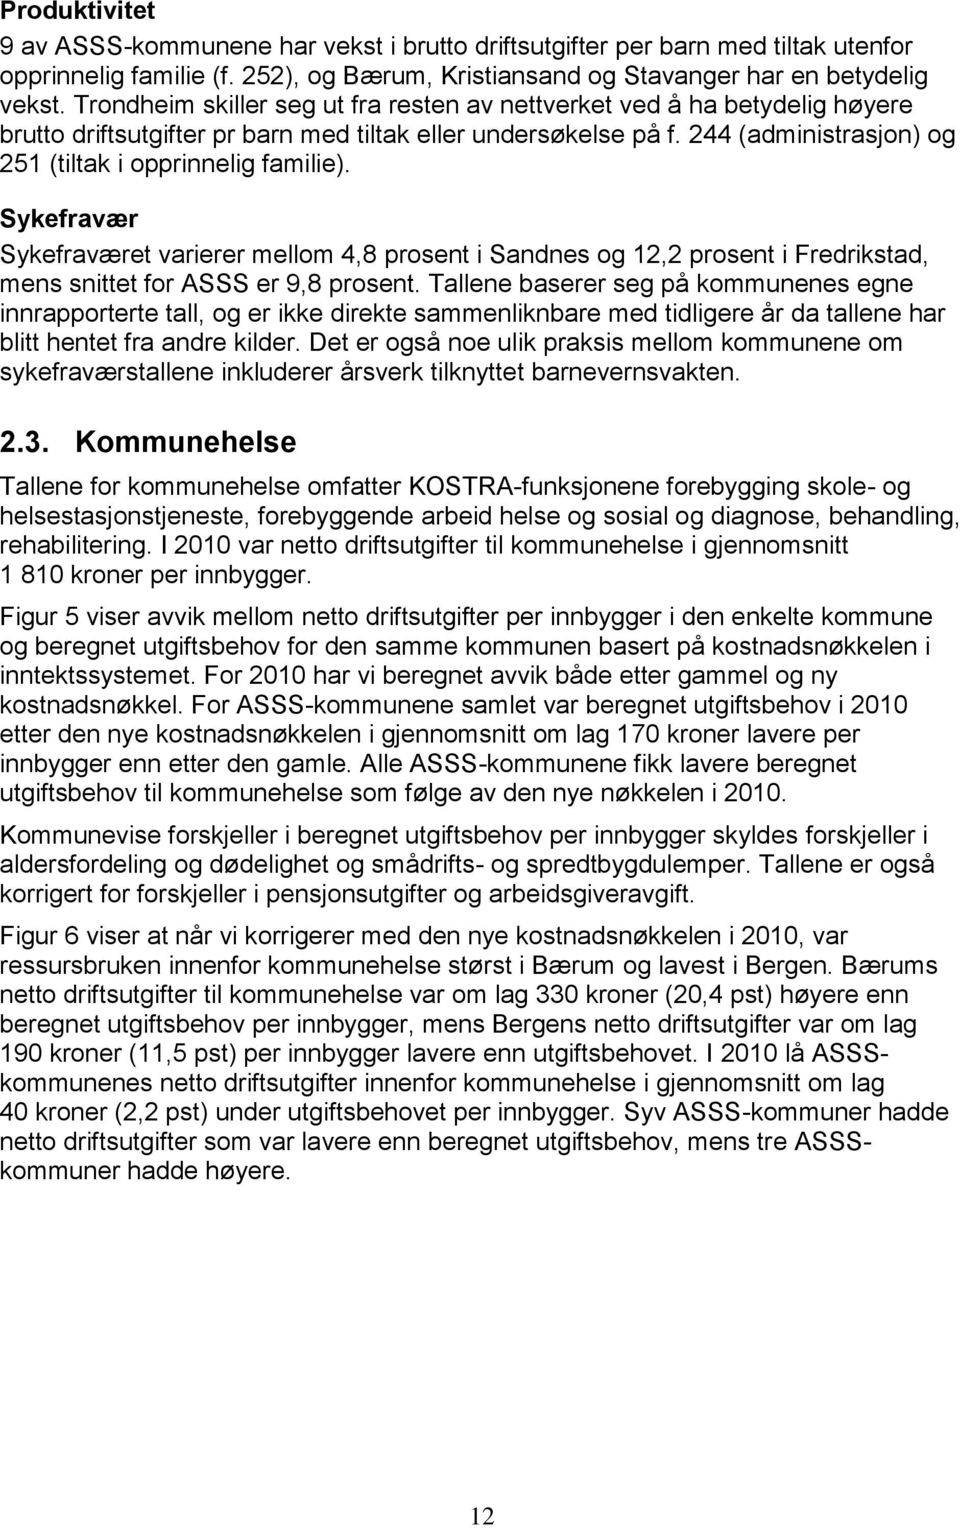 244 (administrasjon) og 251 (tiltak i opprinnelig familie). Sykefravær Sykefraværet varierer mellom 4,8 prosent i Sandnes og 12,2 prosent i Fredrikstad, mens snittet for ASSS er 9,8 prosent.